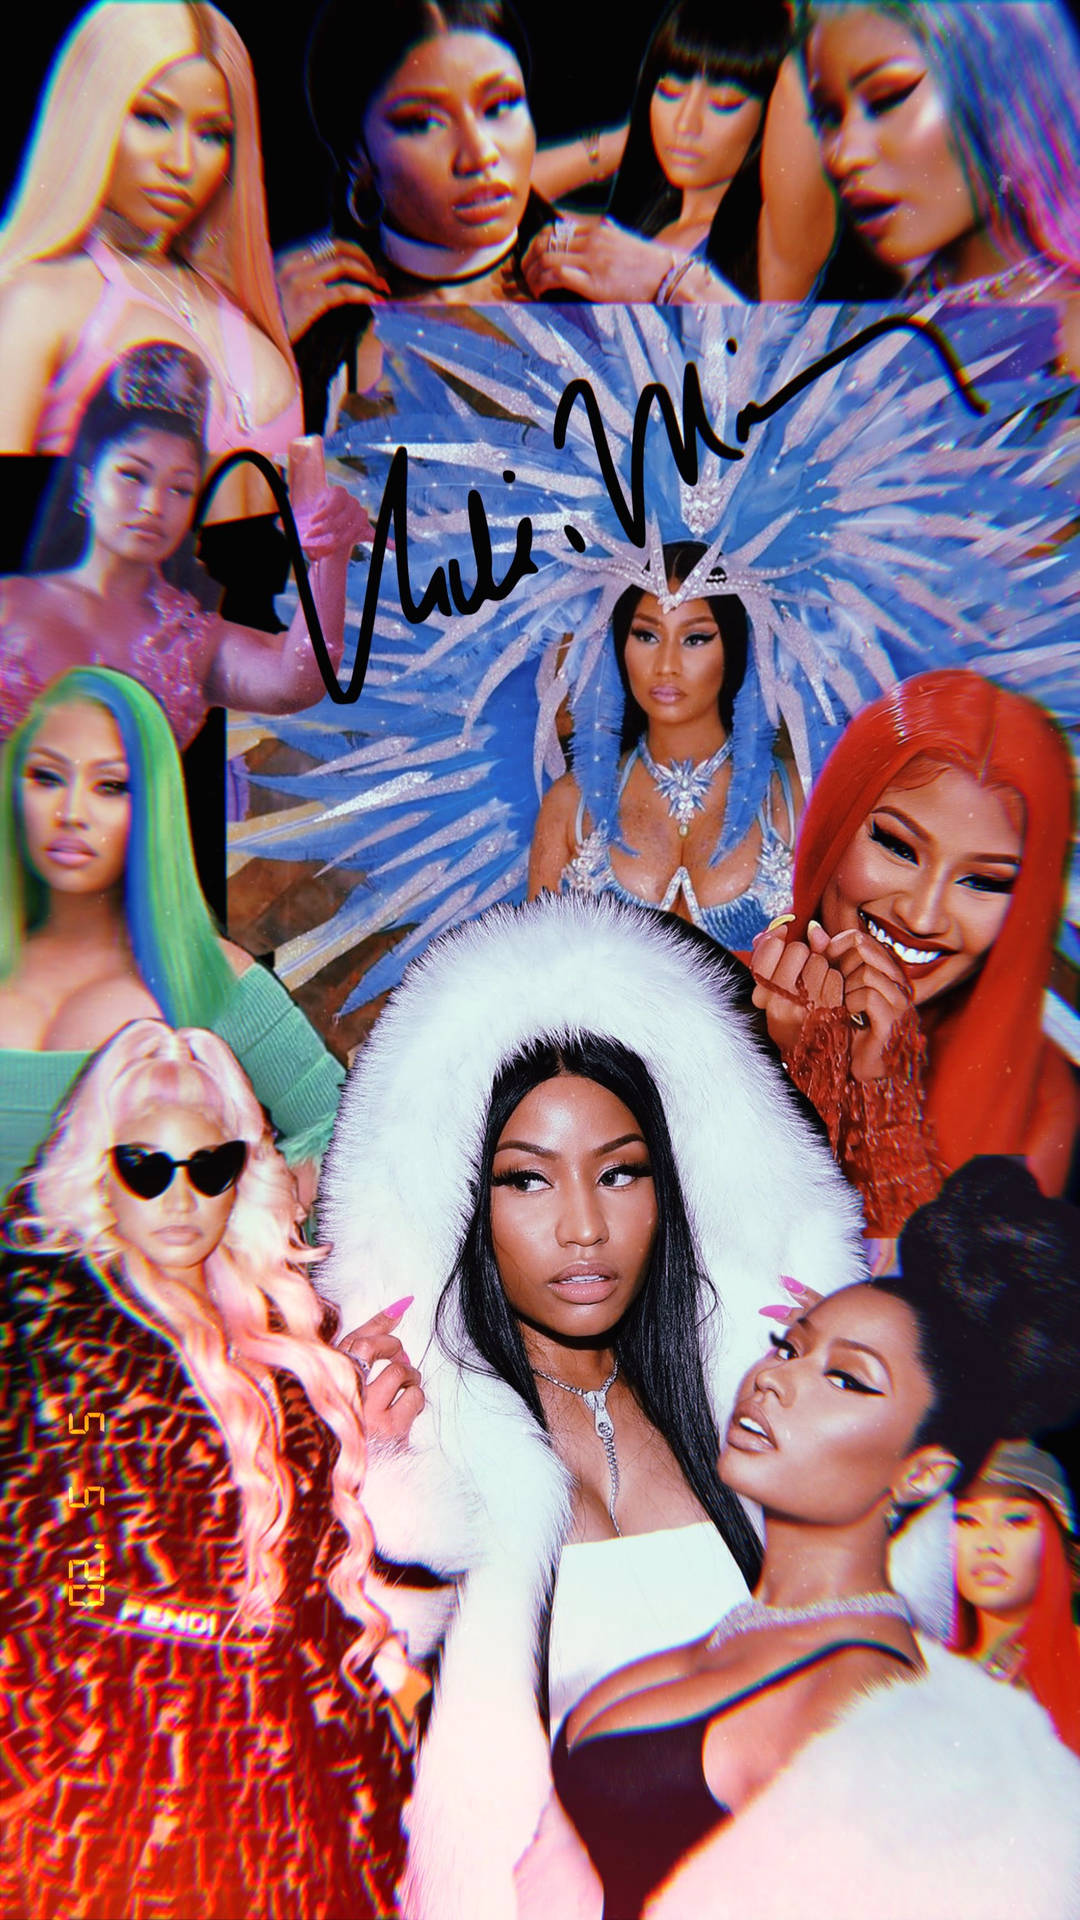 Free Nicki Minaj Wallpaper Downloads, [100+] Nicki Minaj Wallpapers for ...